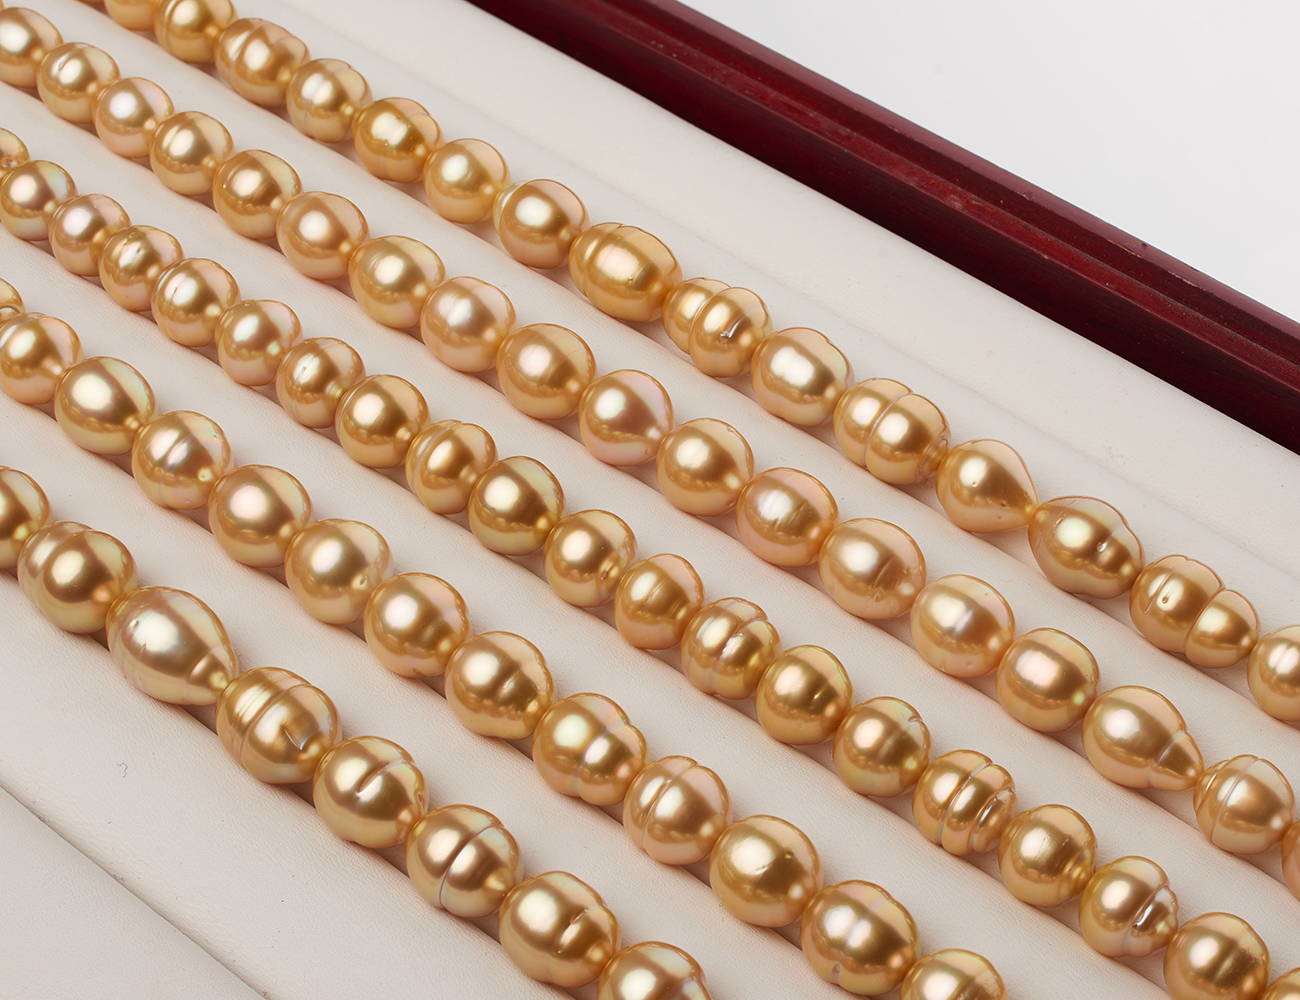 Pearl Shapes: Circled Baroque Pearls